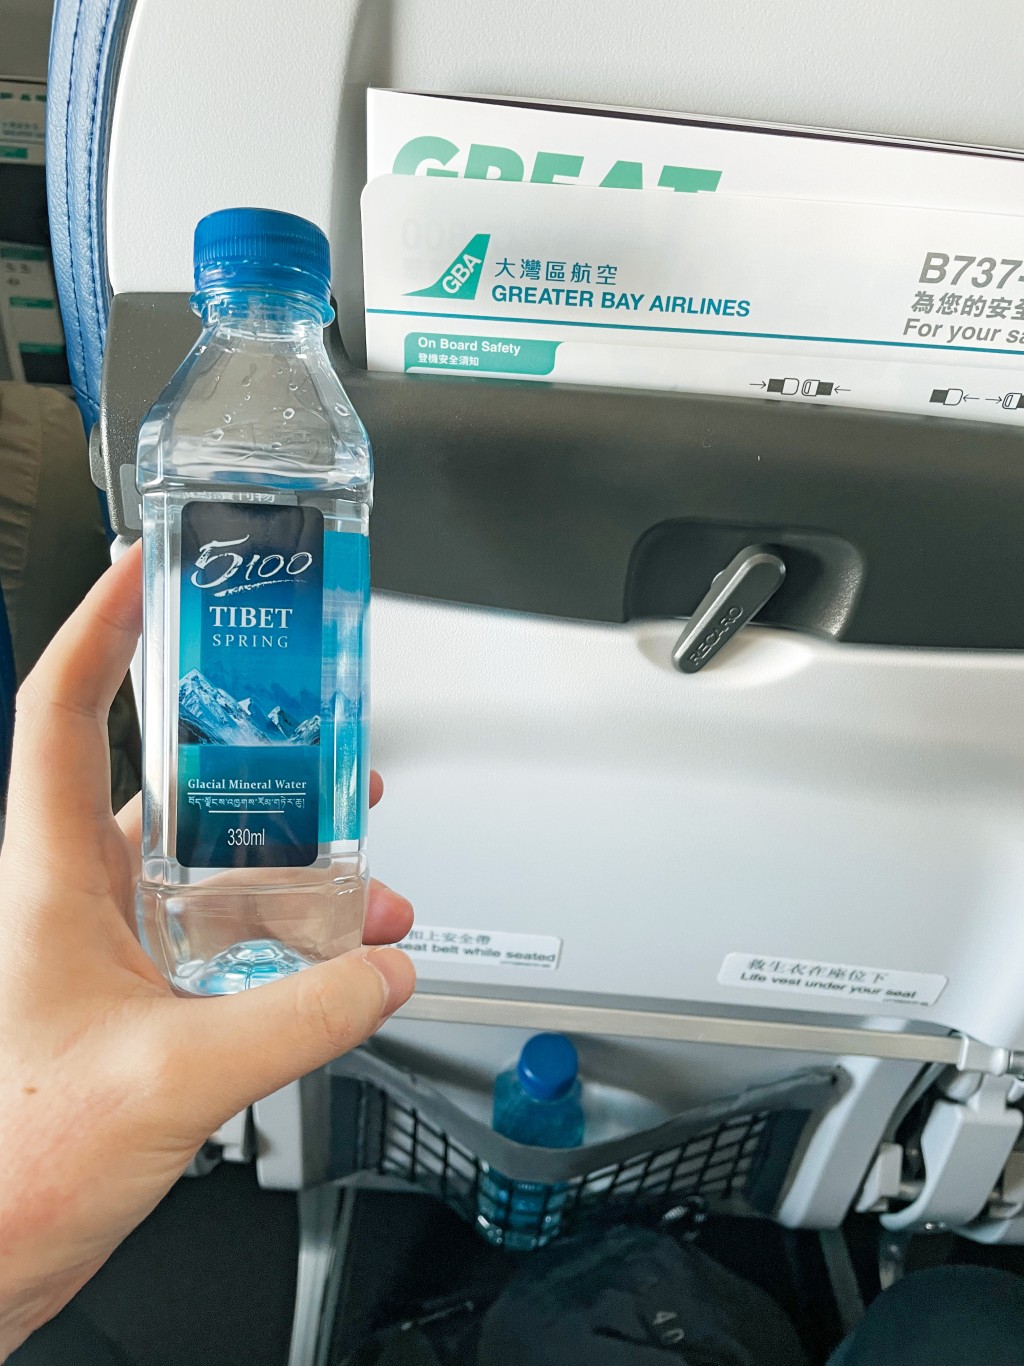 大灣區航空免費派樽裝水，葉小姐大讚「入閘後買水好貴，好貼心」。